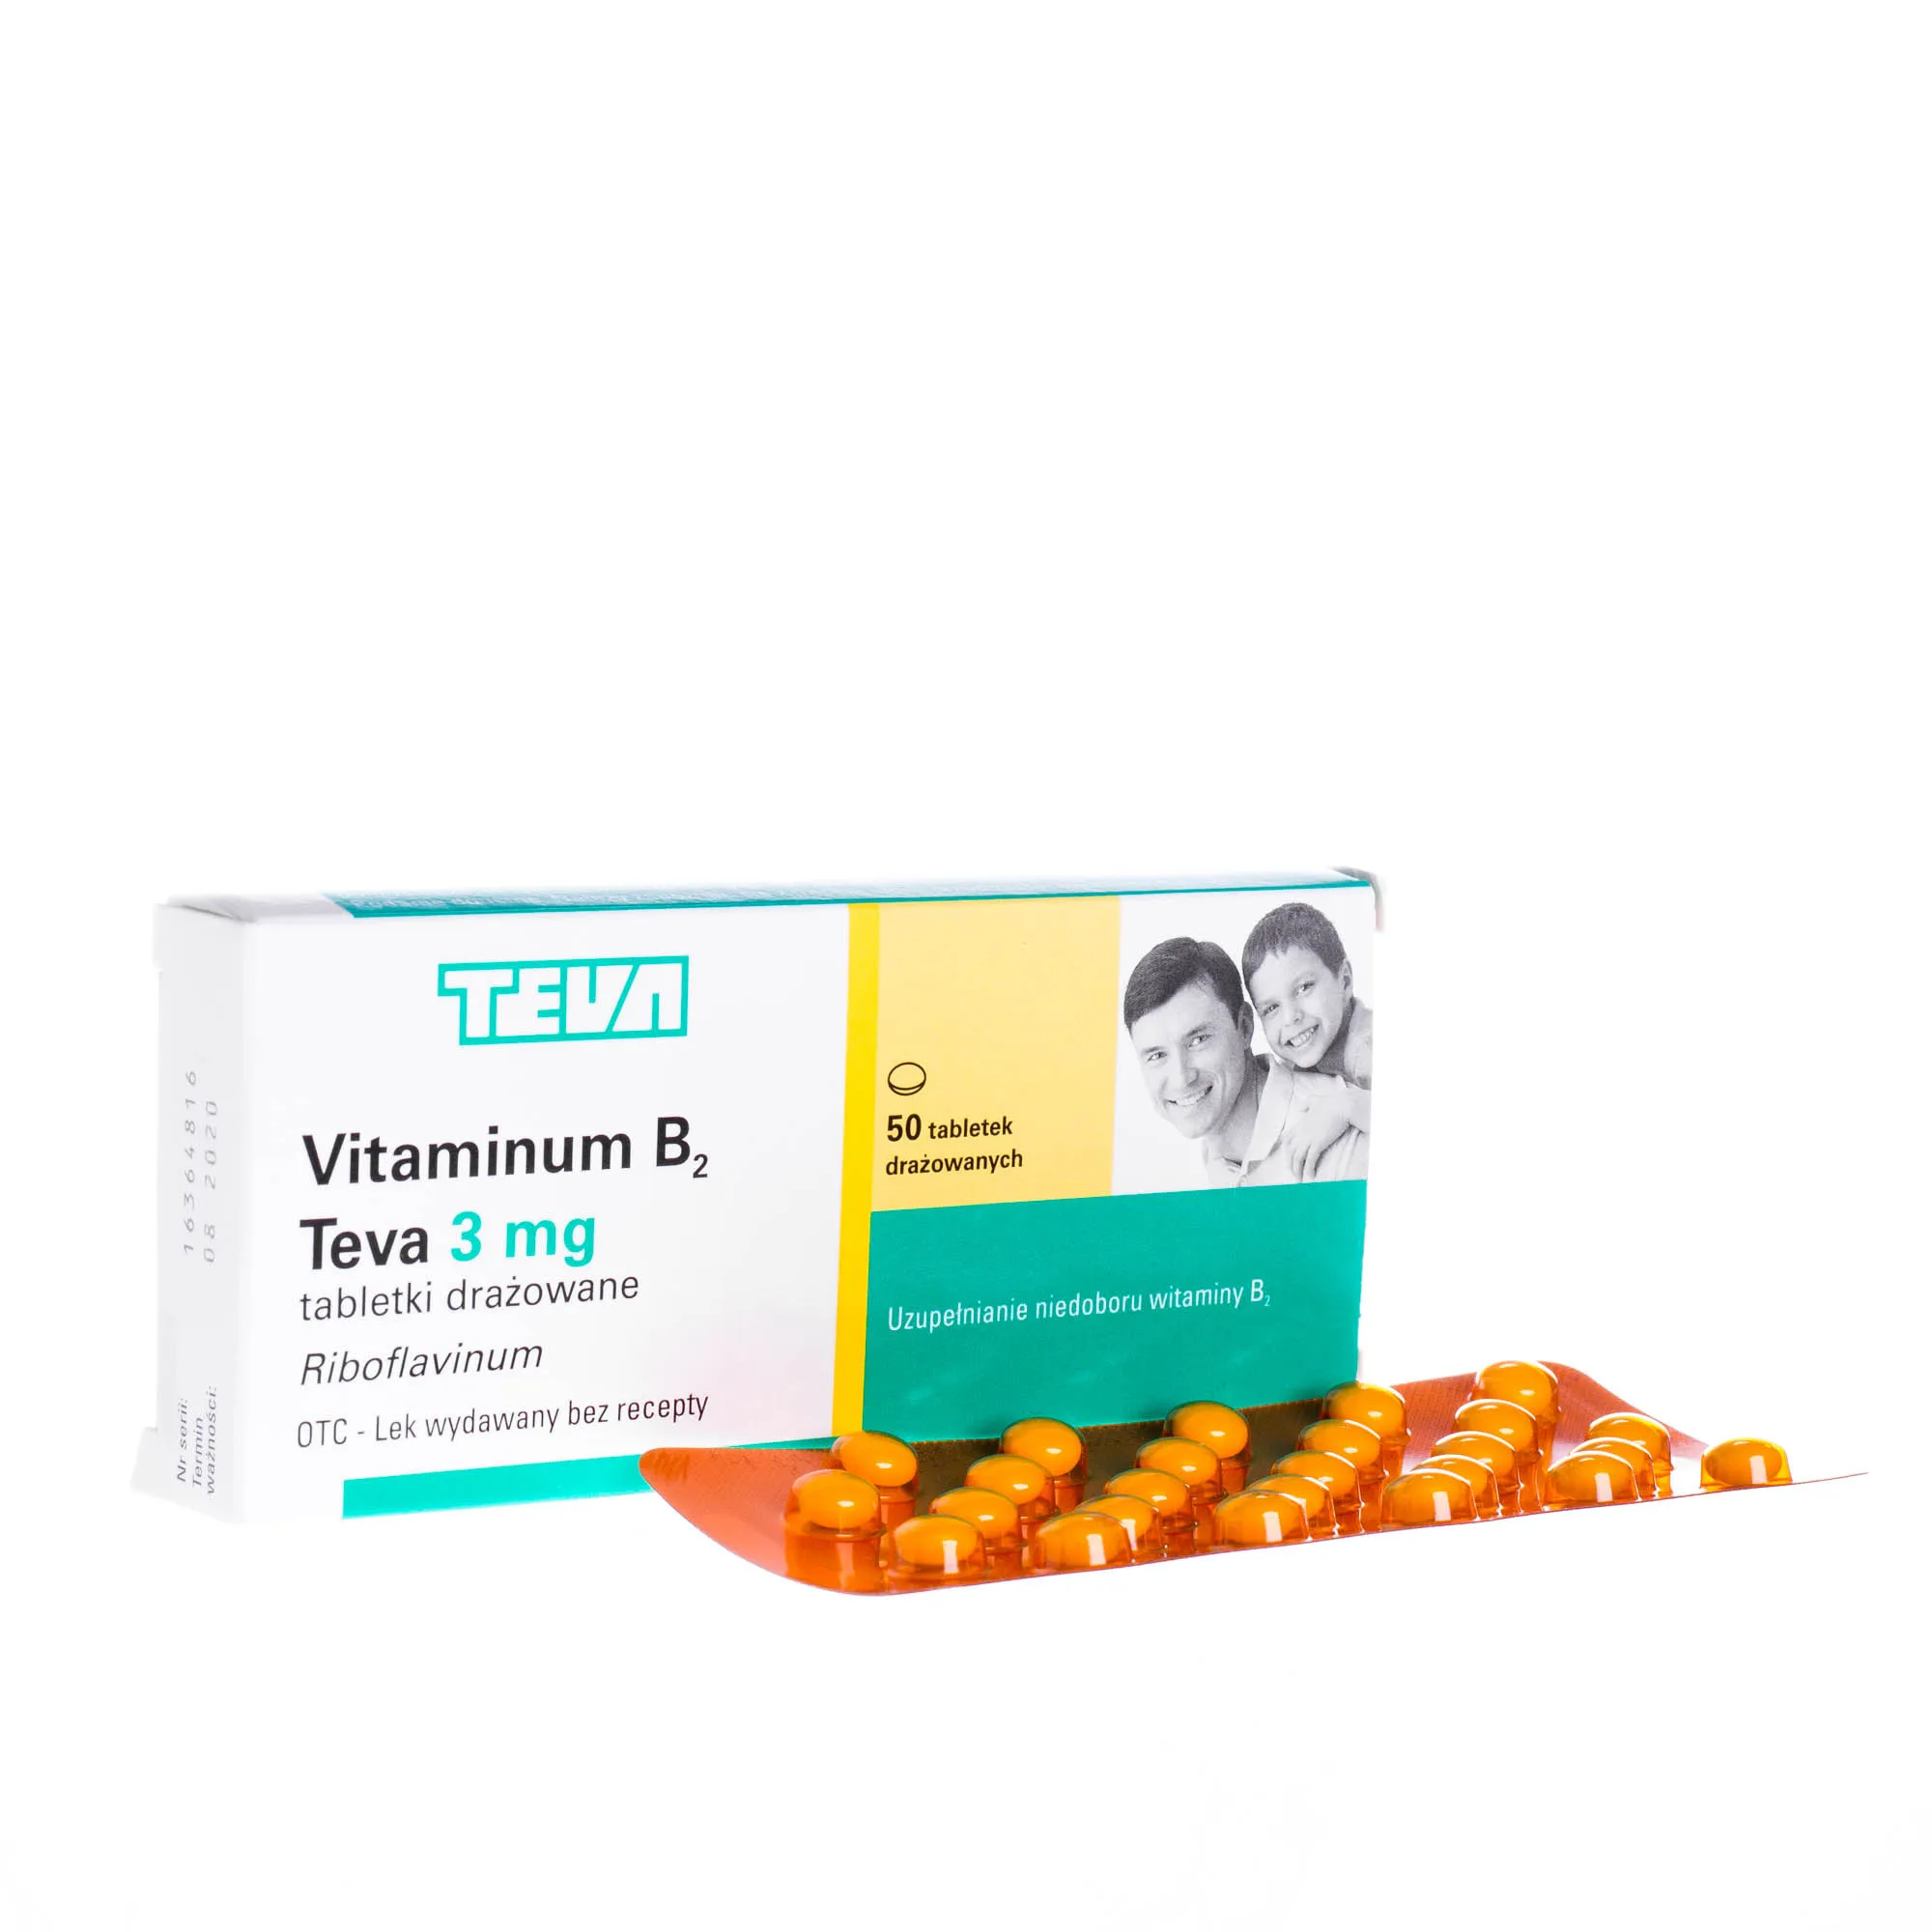 Vitaminum B2 Teva - tabletki drażowane stosowane w celu uzupełnienia niedoboru wit. B2, 50 szt.